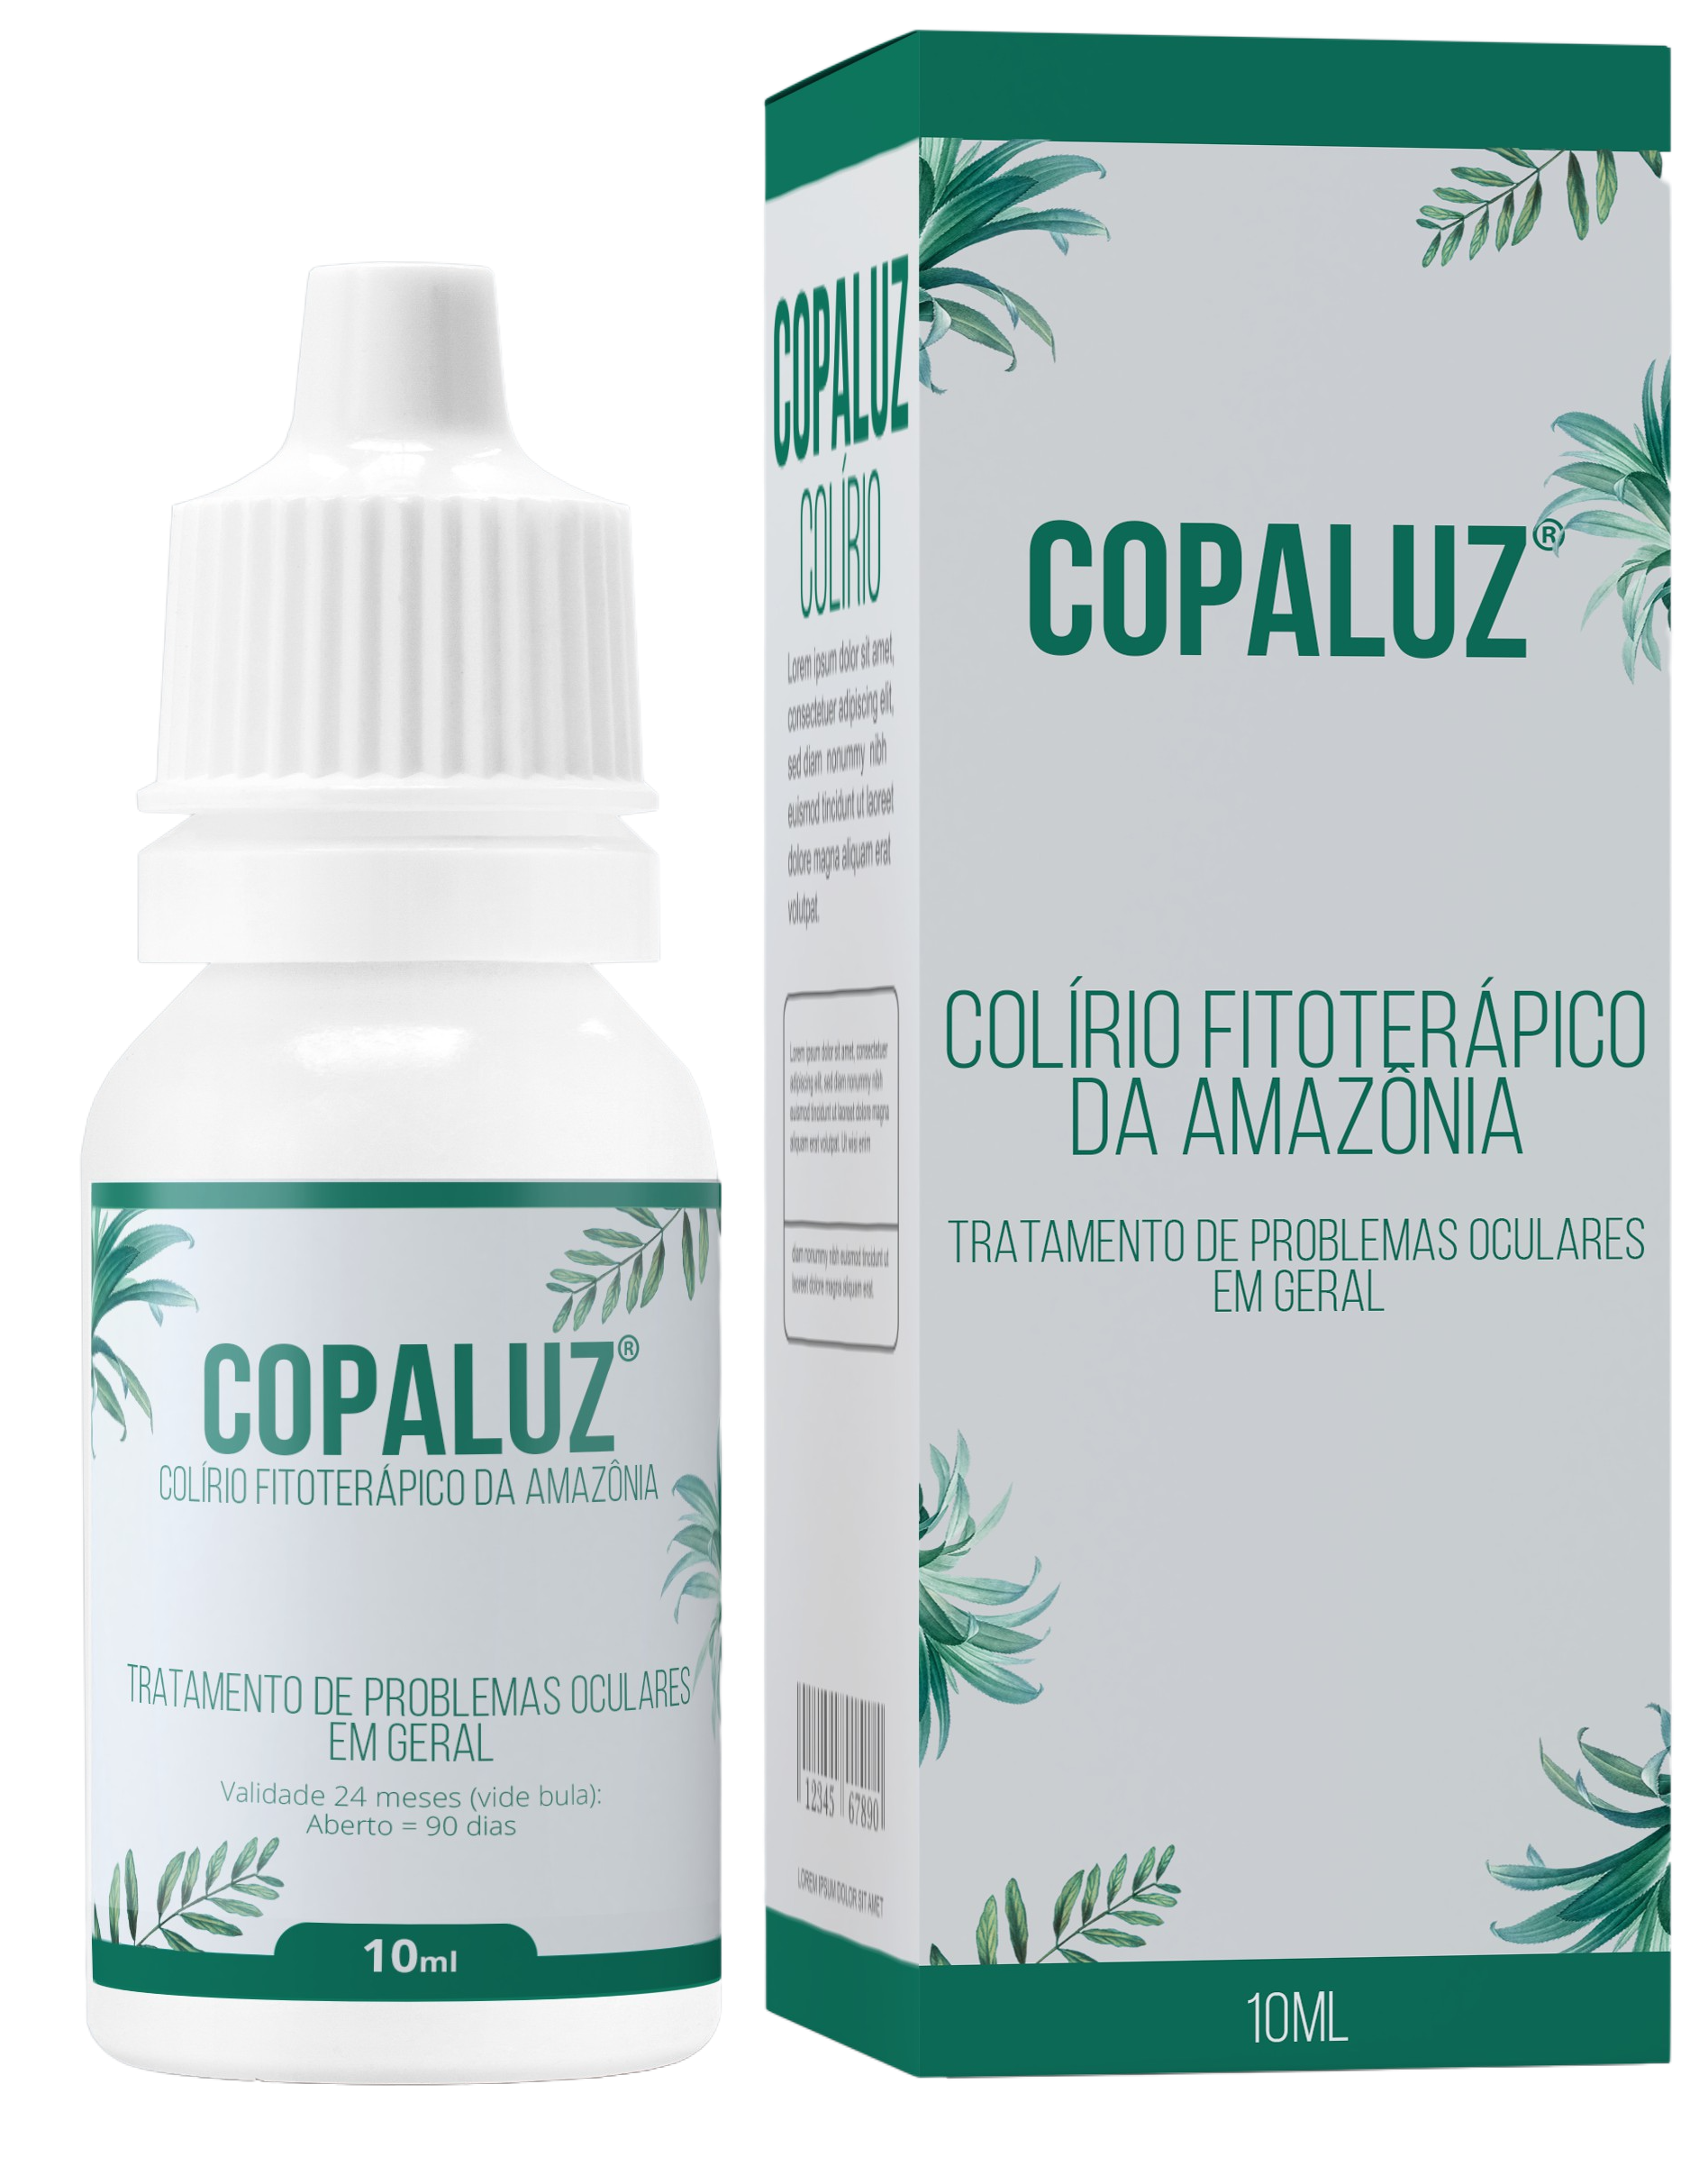 Copaluz - Colírio Fitoterápico